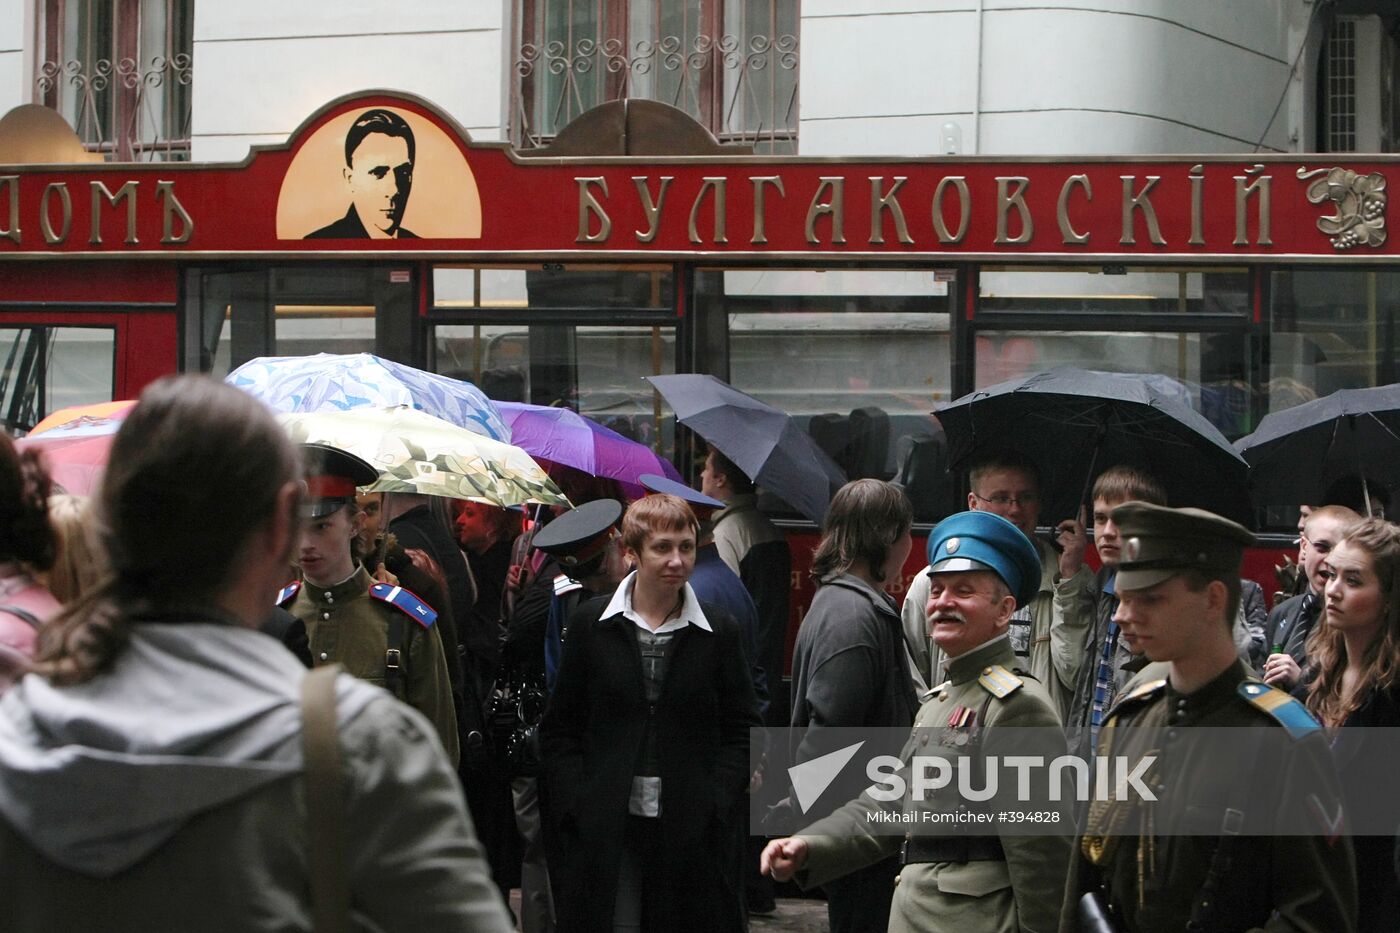 Celebrations of 118th anniversary of Mikhail Bulgakov's birthday